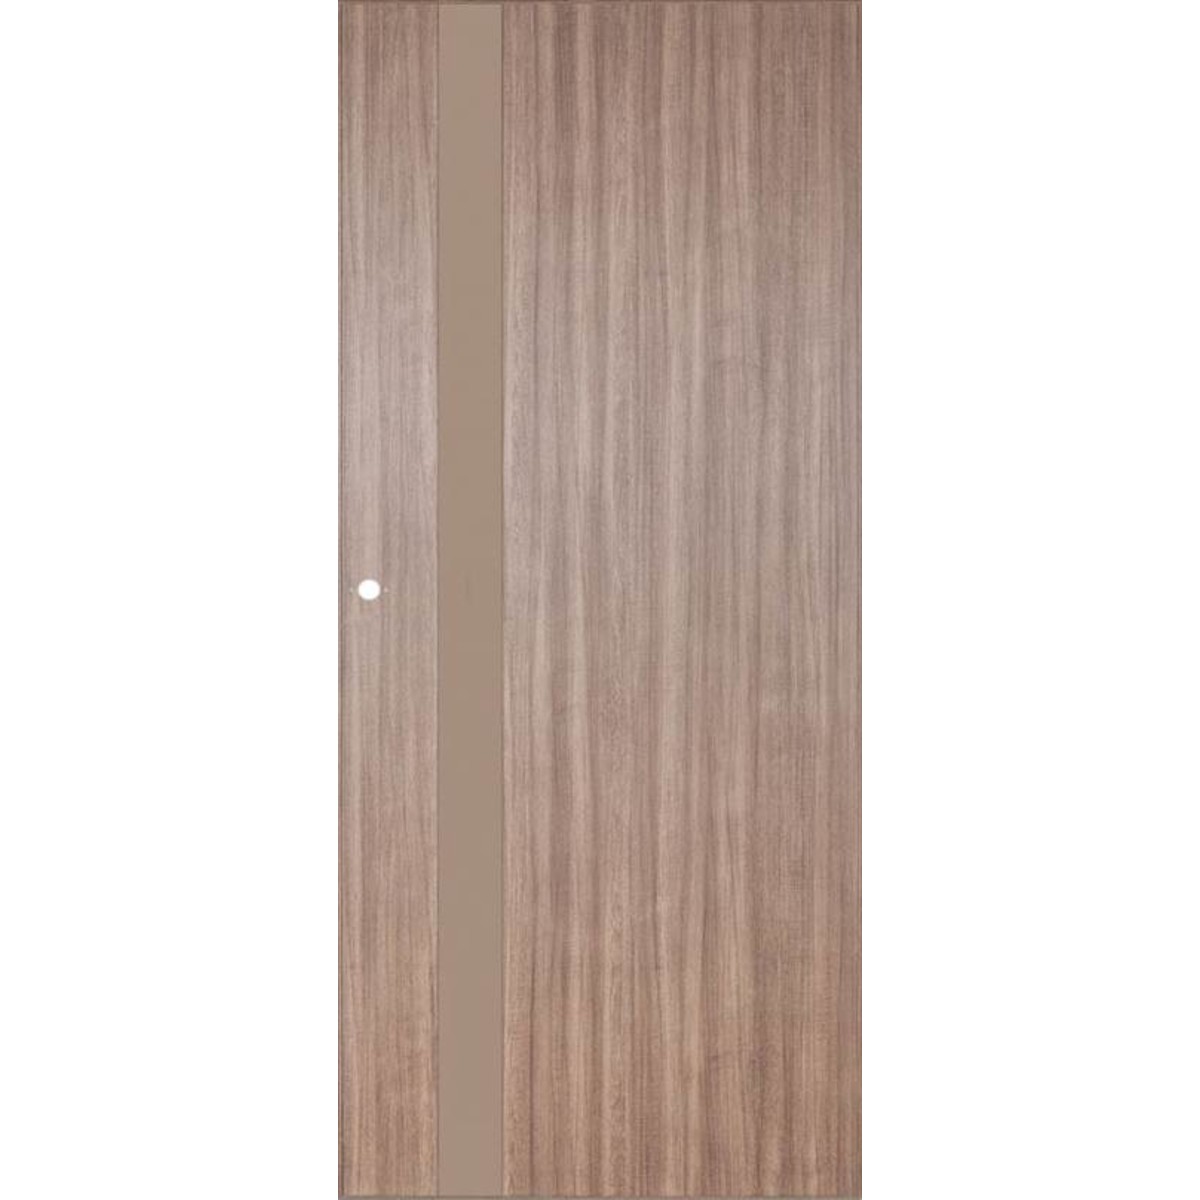 Дверь межкомнатная остеклённая Селена 60x200 см цвет орех